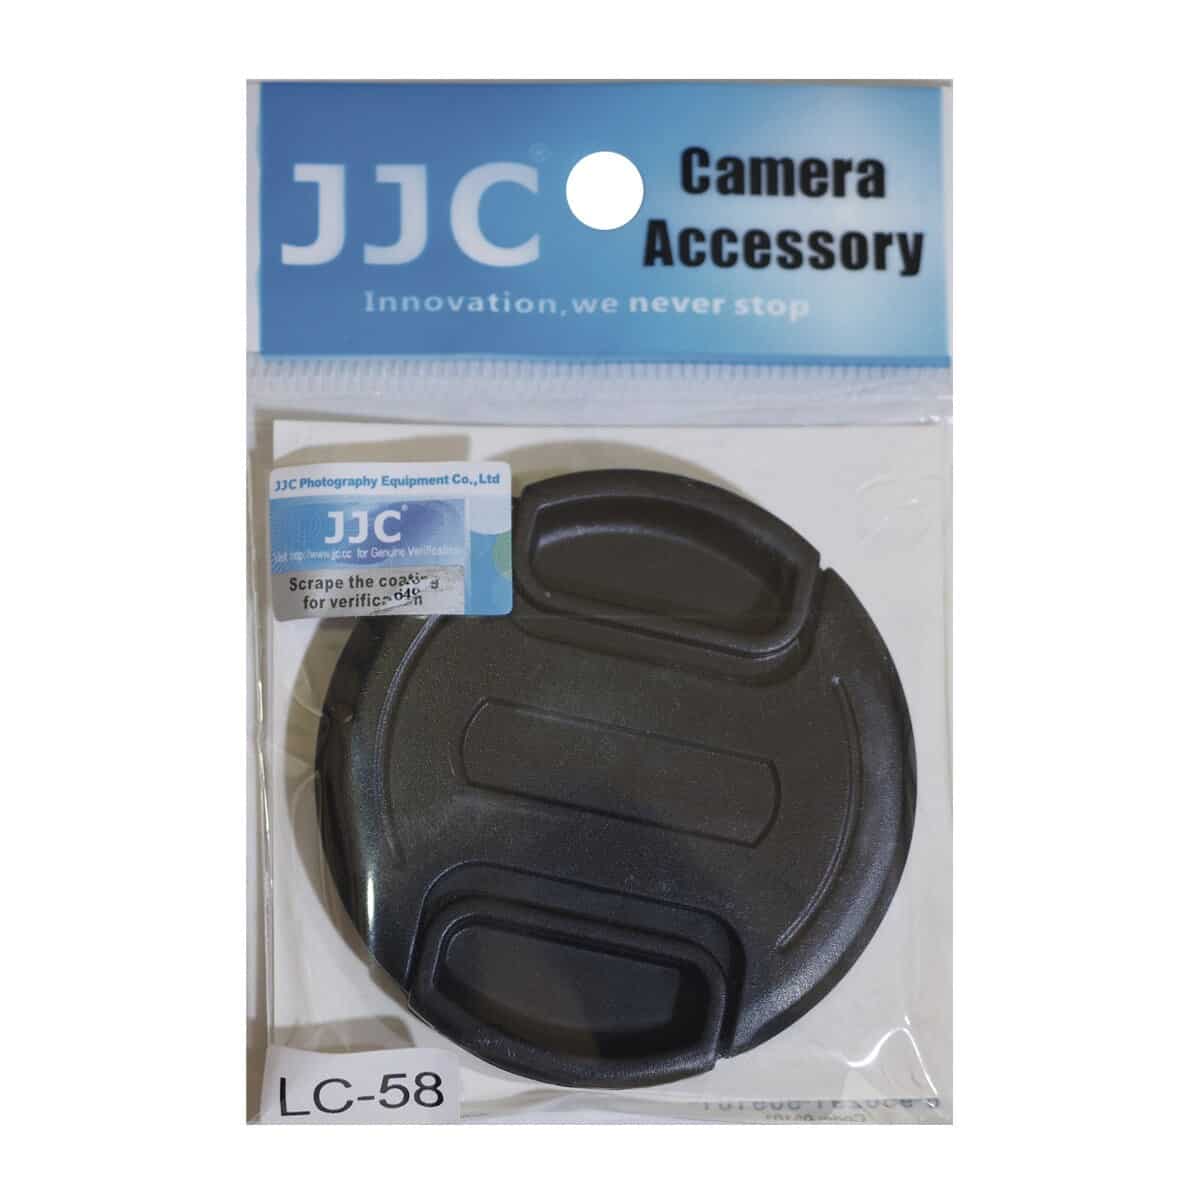 Tapa de protección JJC para objetivos con diametro 58 mm